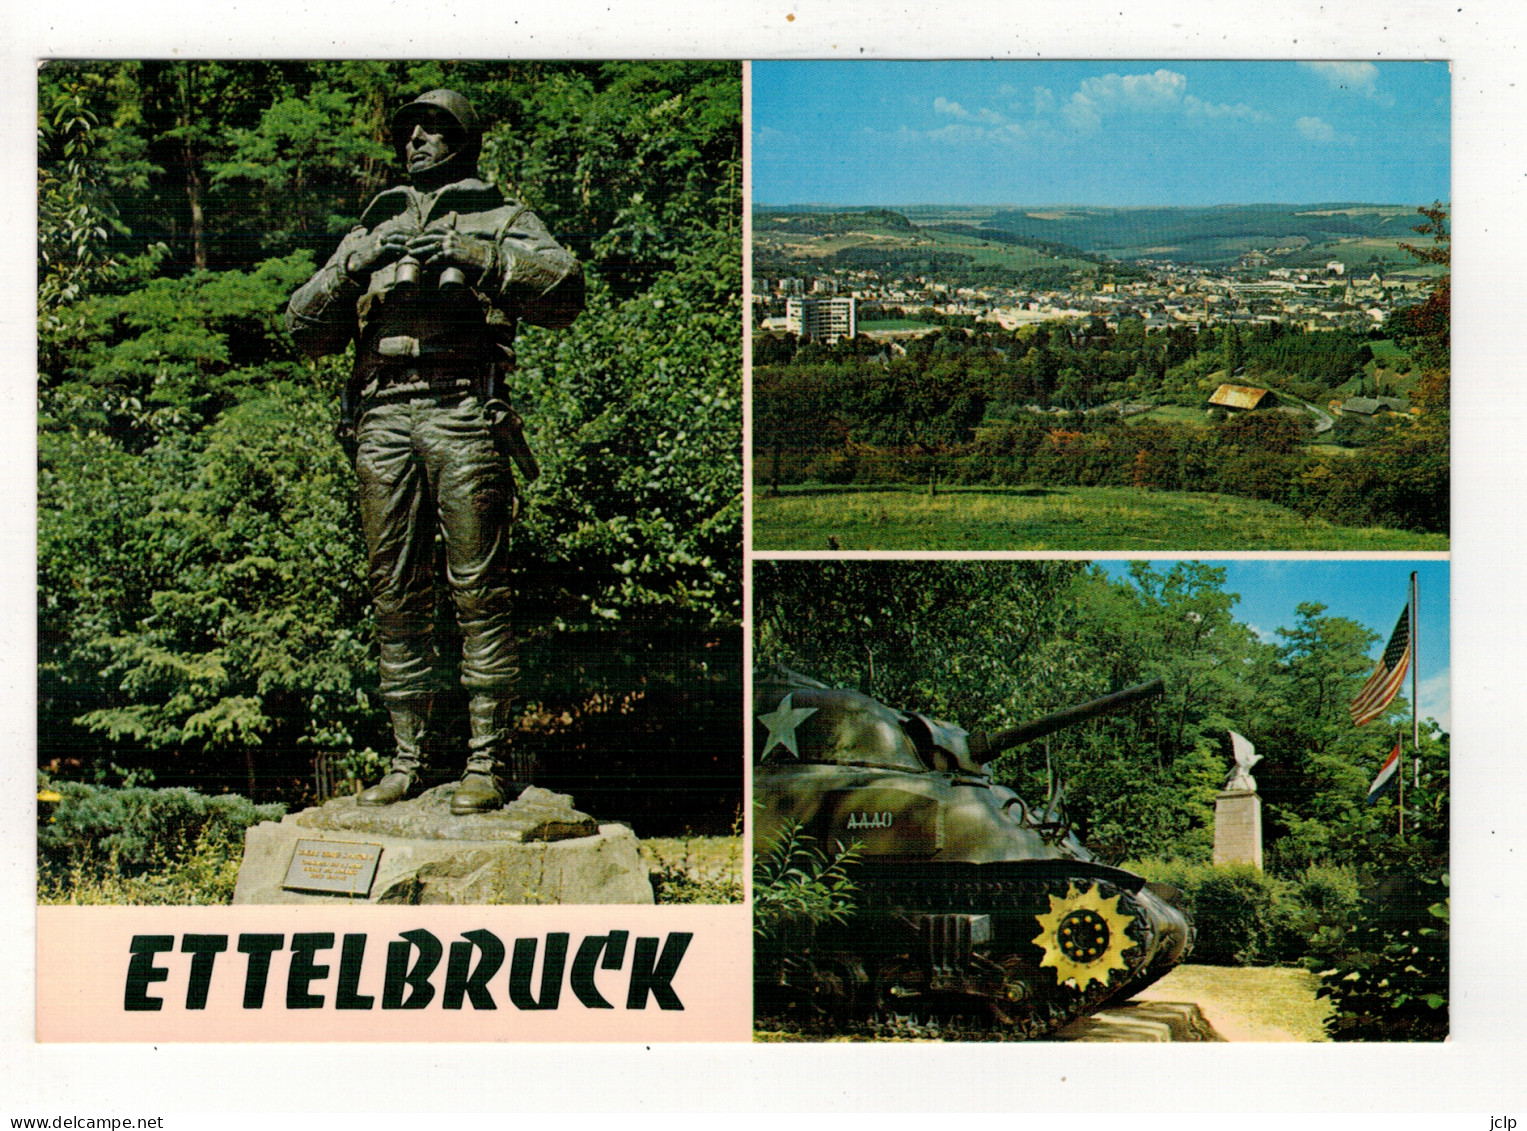 ETTELBRUCK - Monument Patton - Panorama. - Ettelbruck